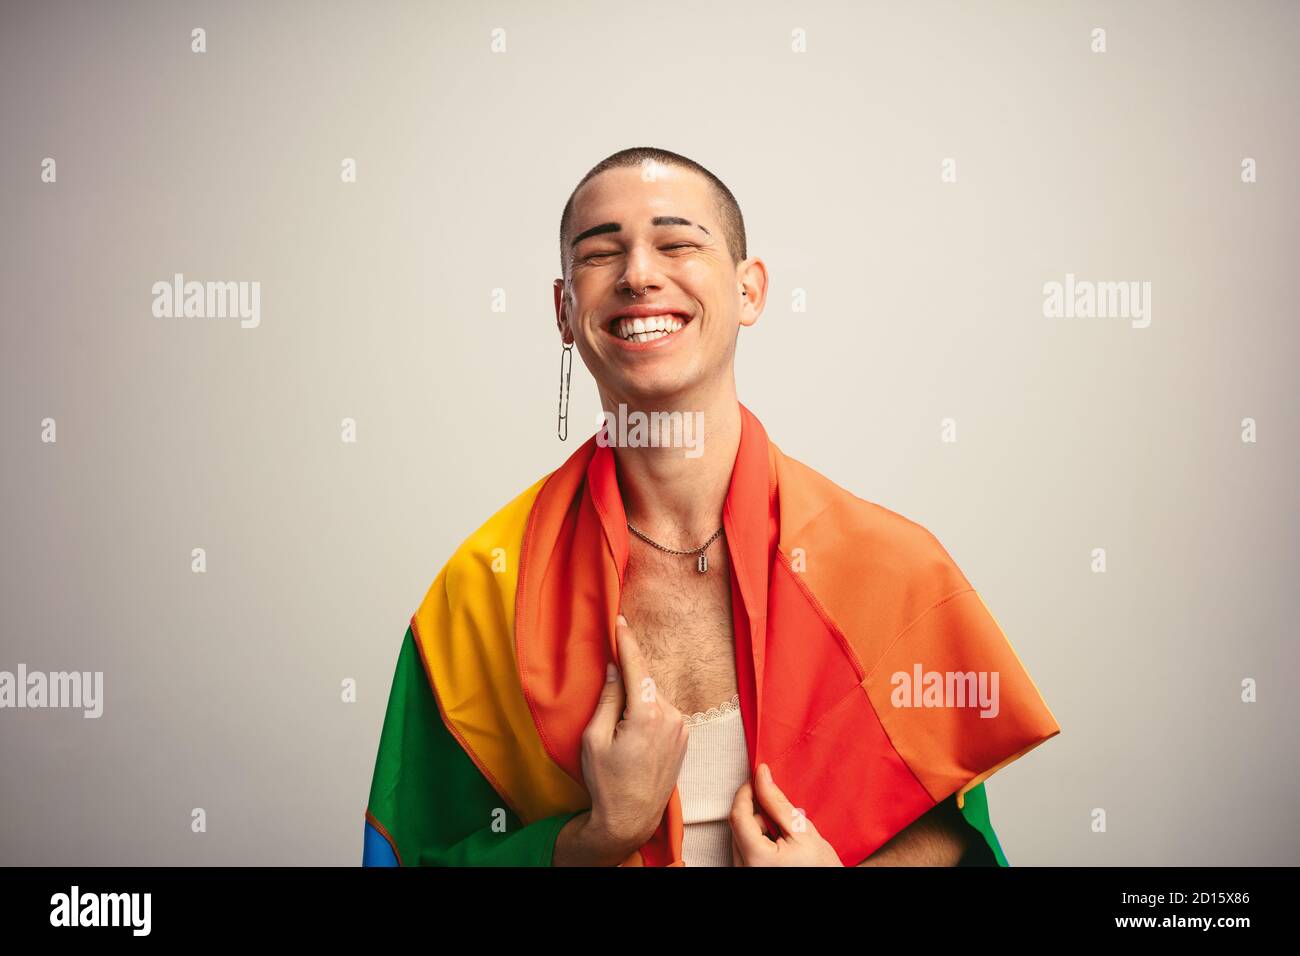 Homme transsexuel gai avec drapeau de fierté gay. Sexe masculin fluide avec drapeau lgbt sur fond blanc. Banque D'Images